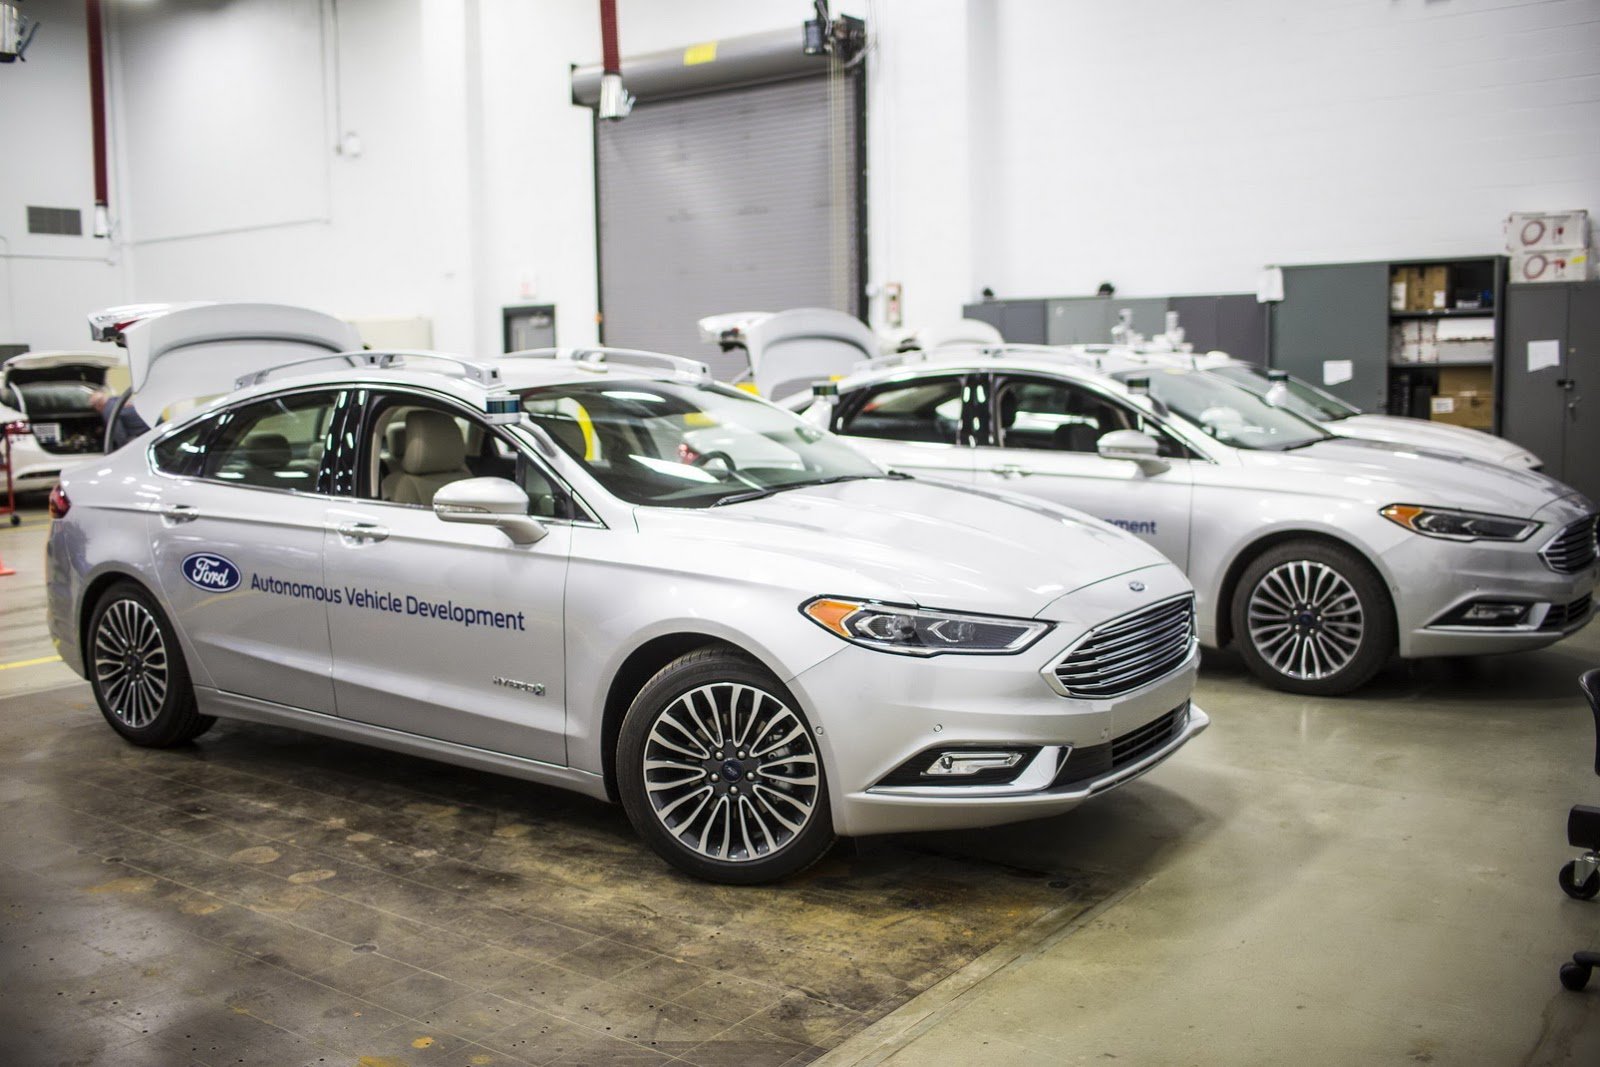 Ford, Autonomous Vehicle Development